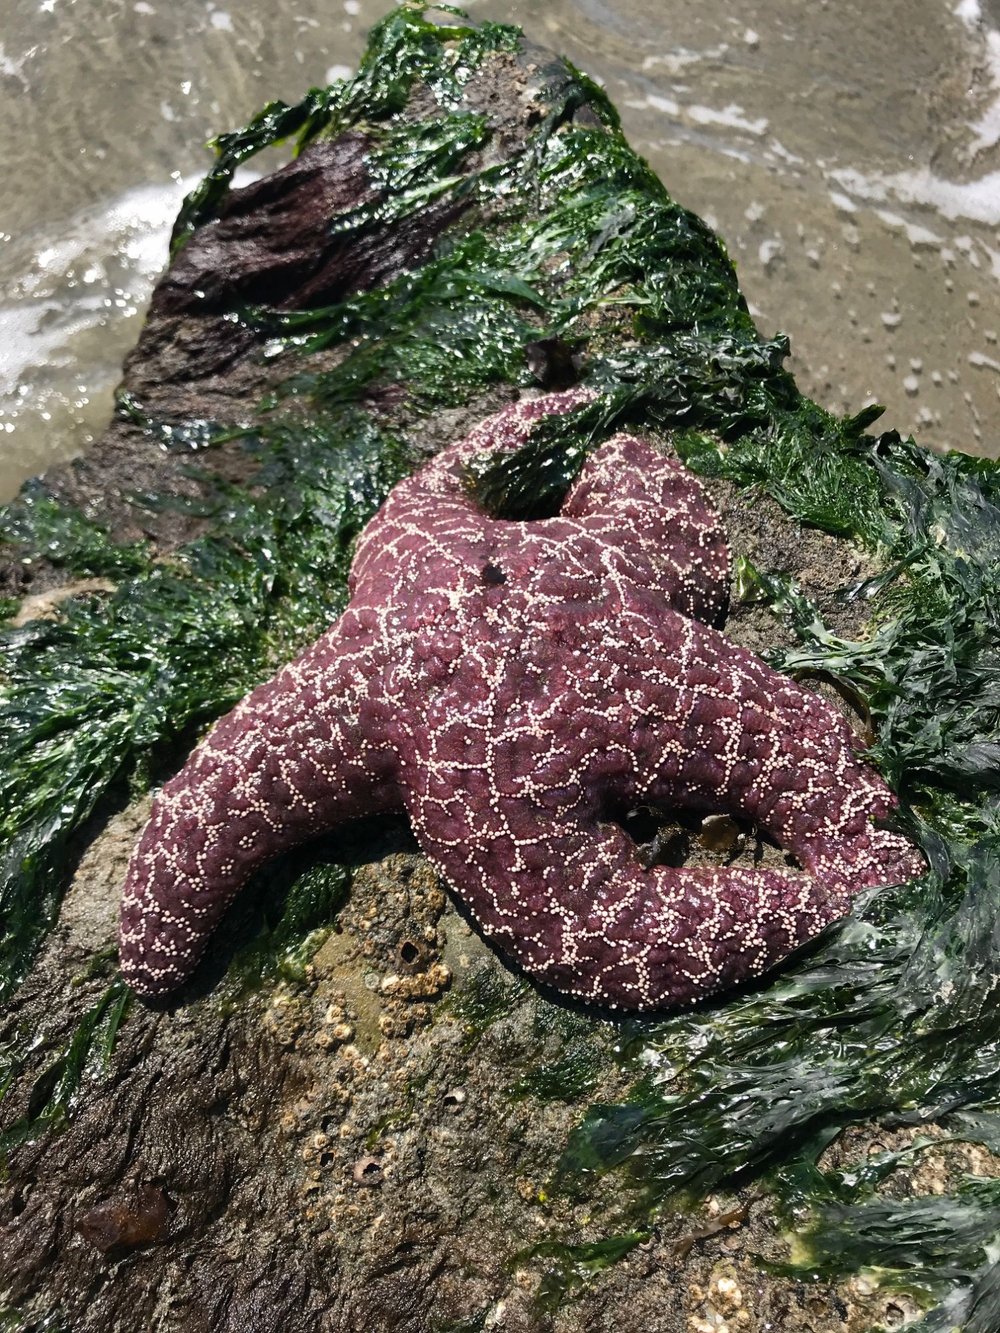 sea star revealed in low tide